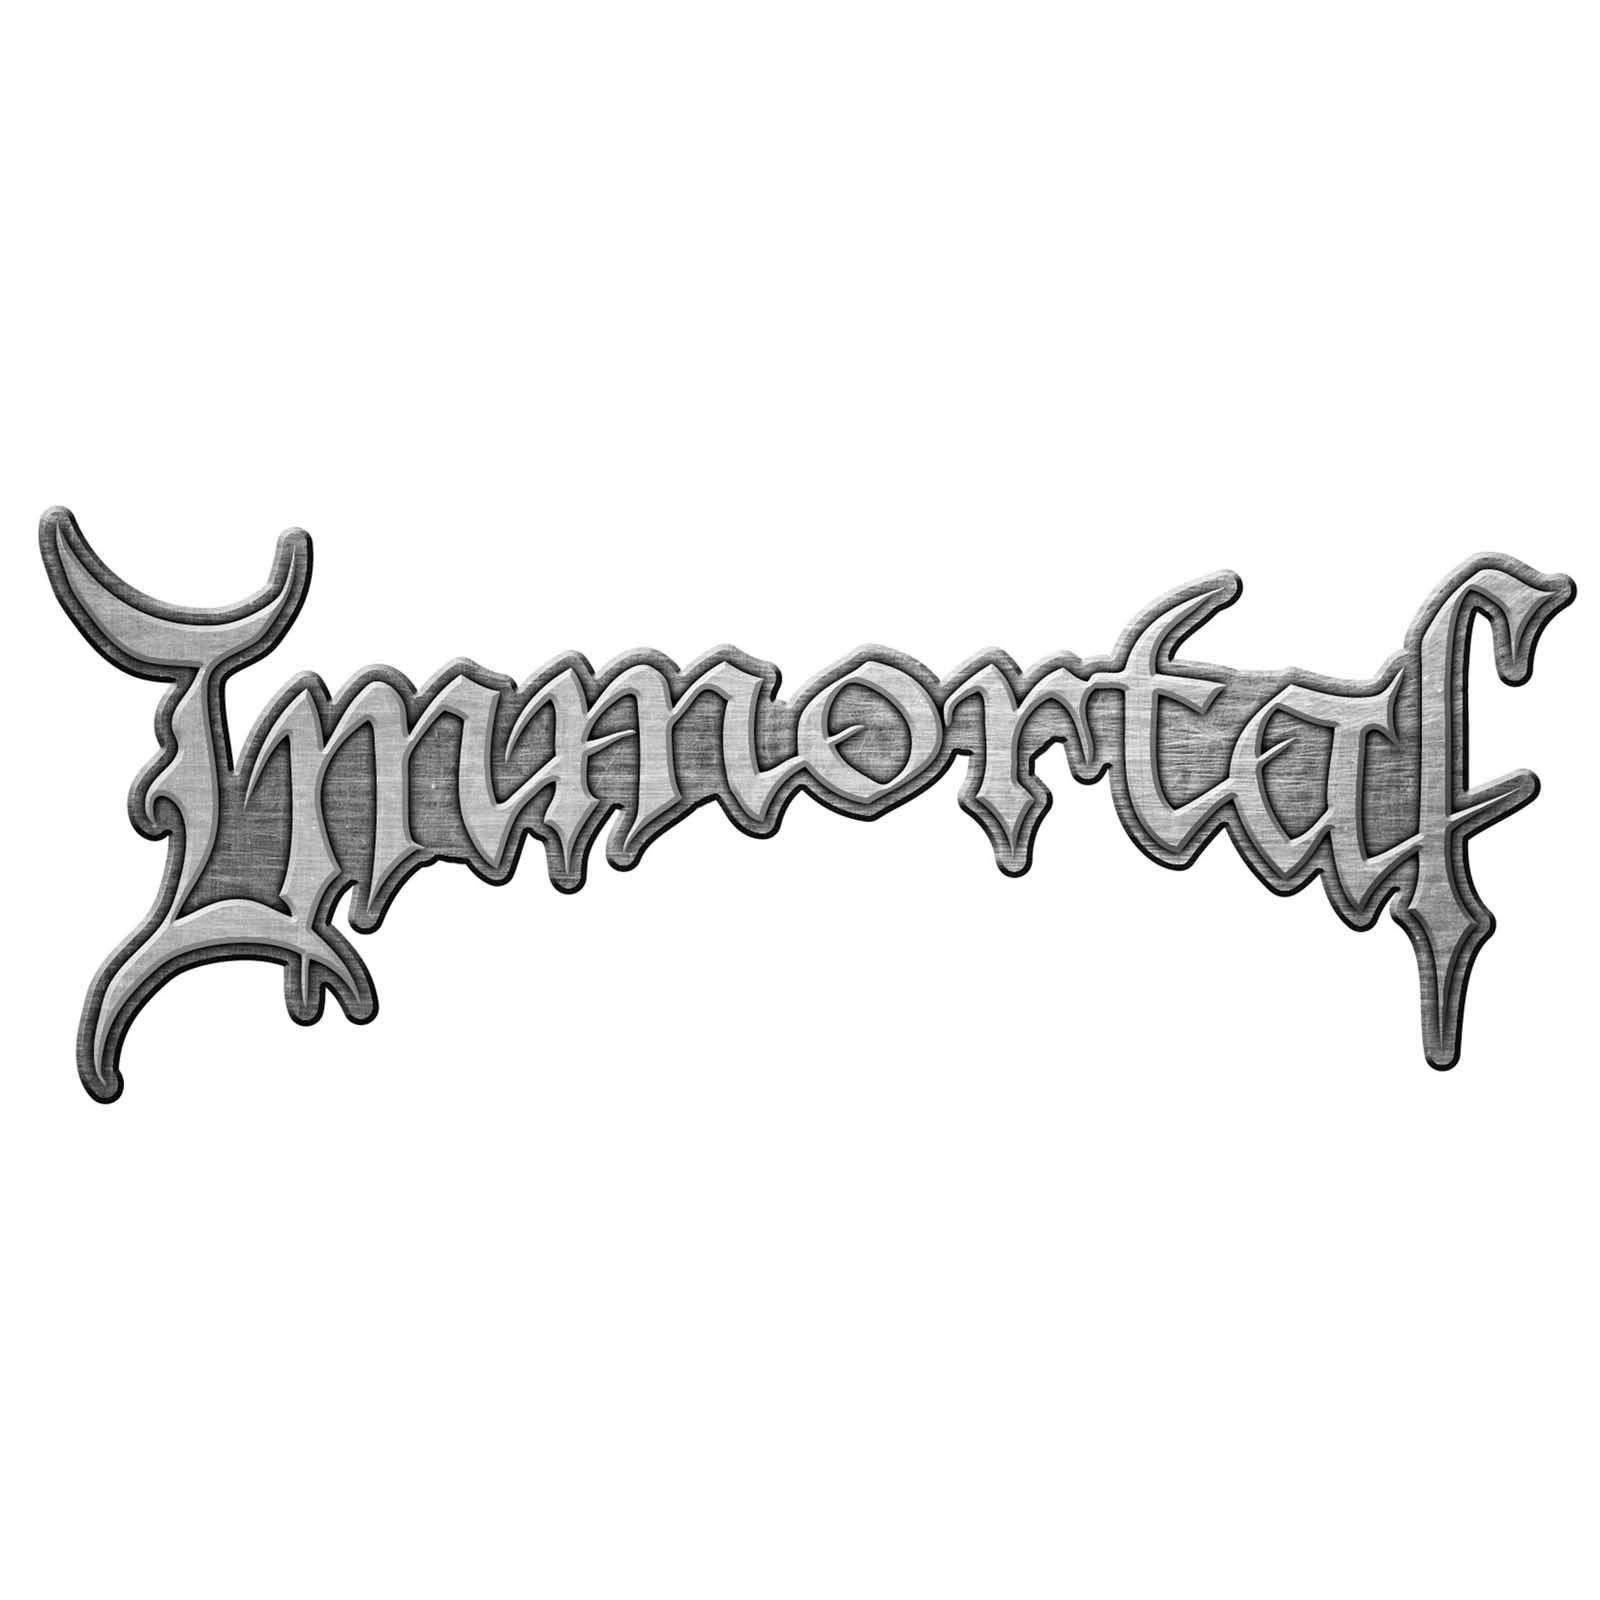 (イモータル) Immortal オフィシャル商品 ロゴ ダイキャスト バッジ 【海外通販】